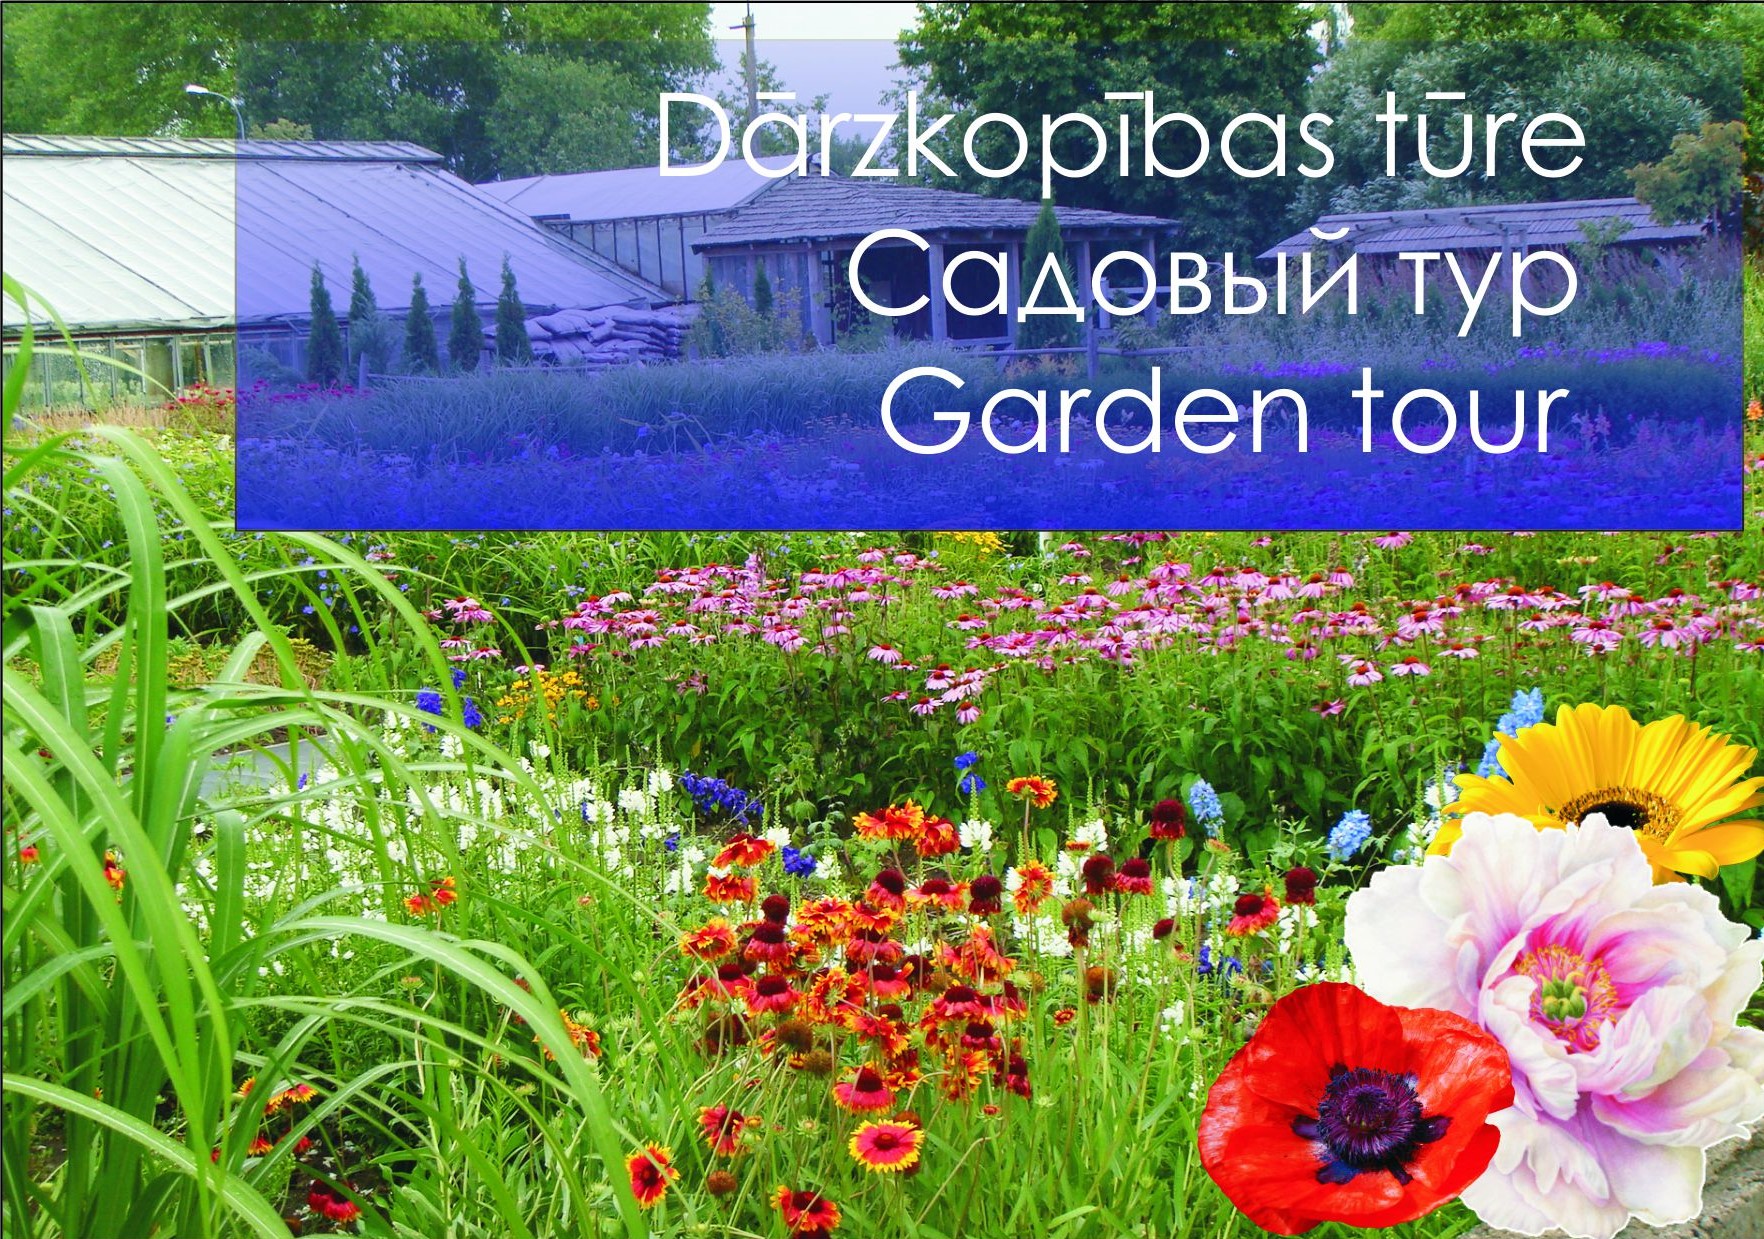 Garden tour